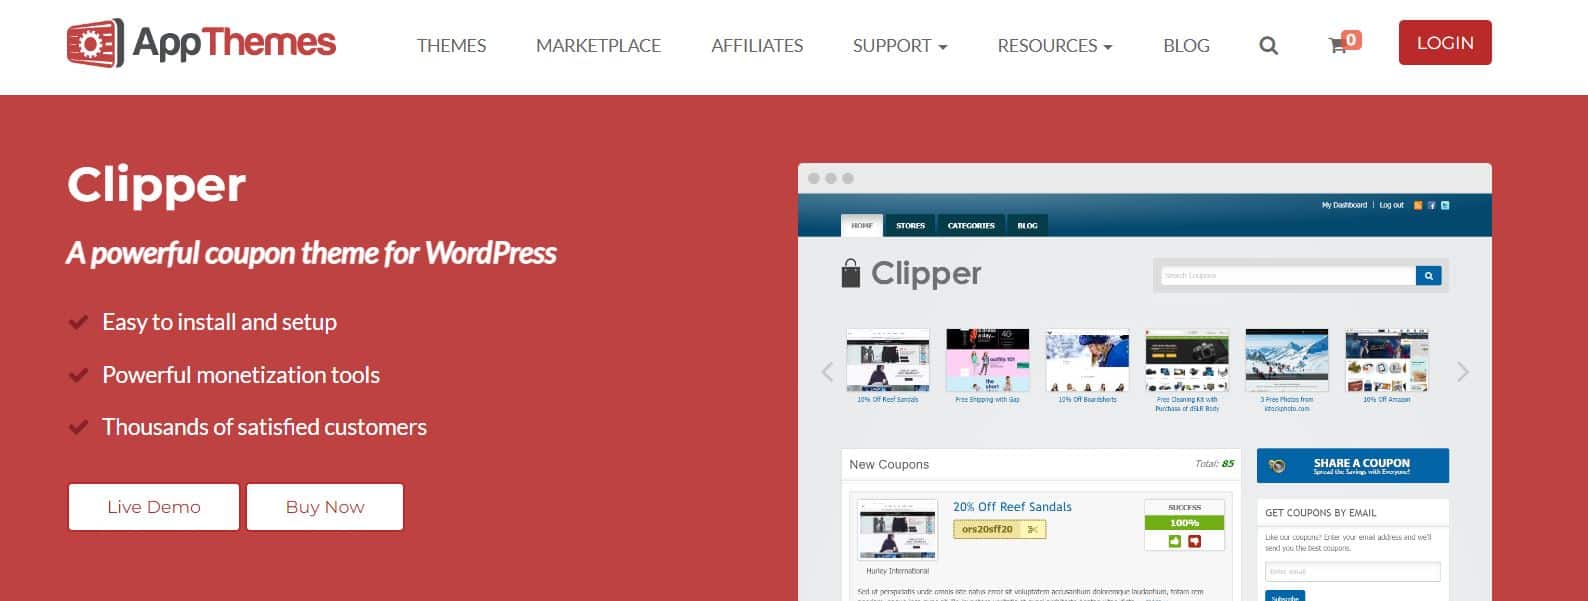 Clipper-temats hemsida (Källa: AppThemes)